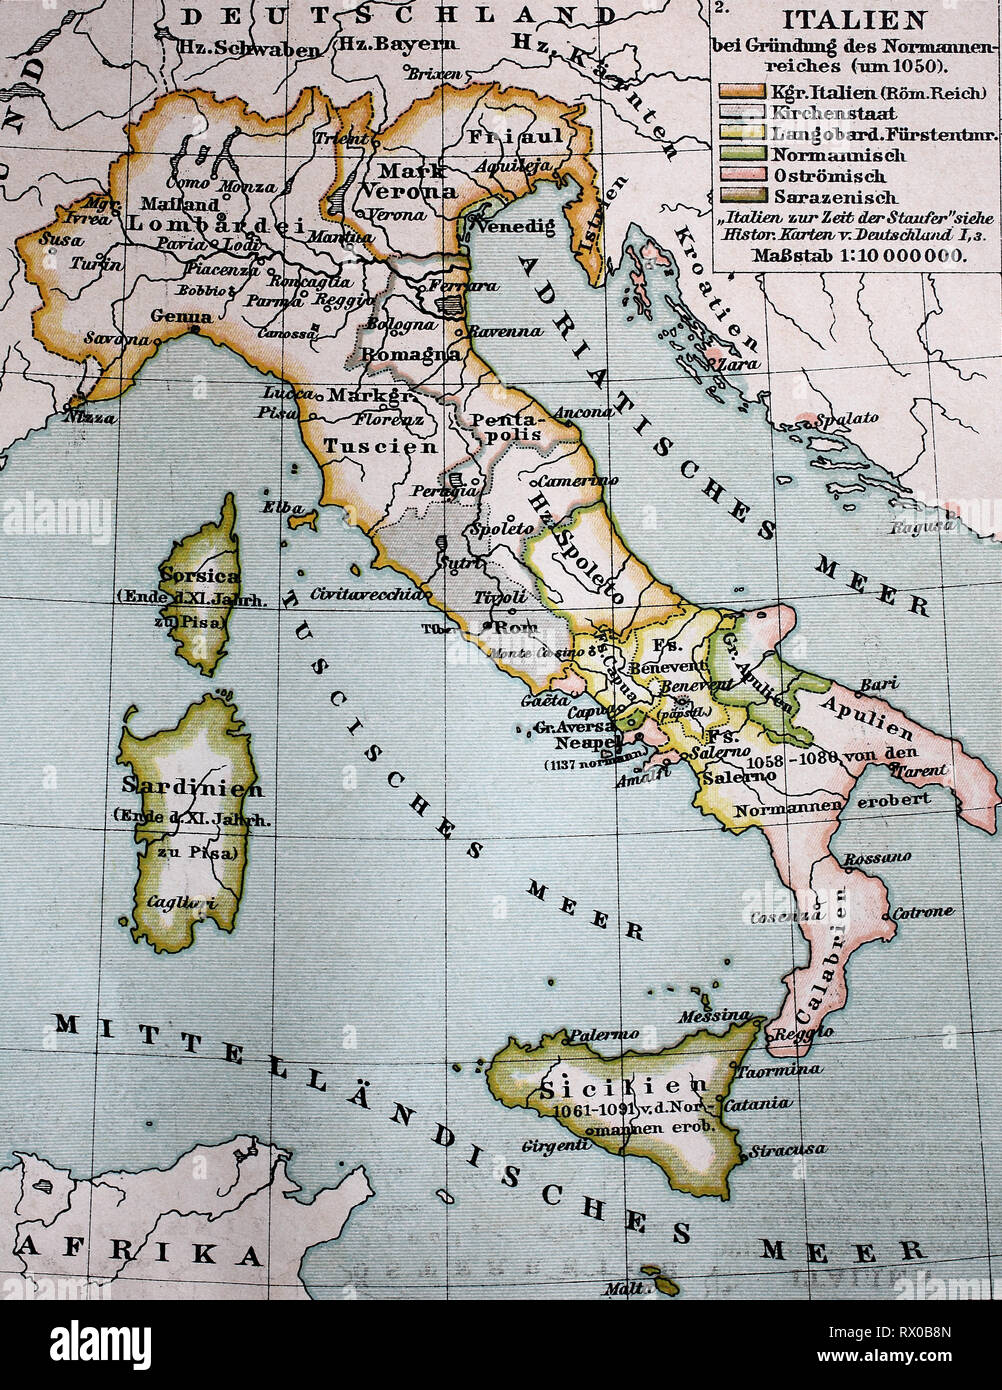 Landkarte von Italien bei GrÃ¼ndung des Normannenreiches um 1050 / Karte von Italien an der Gründung von Norman Reich um 1050 Stockfoto